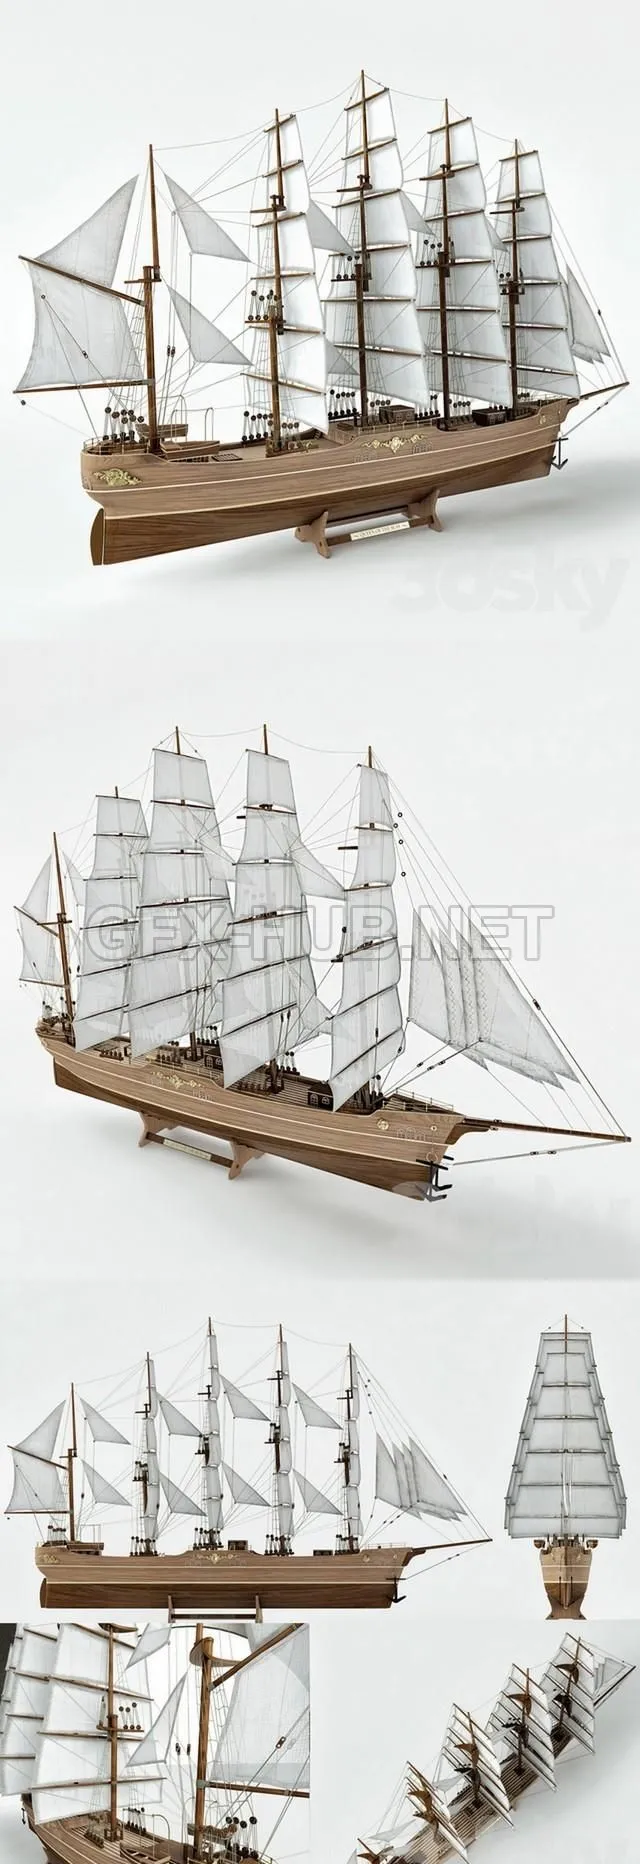 Sailboat 3D model – 2714